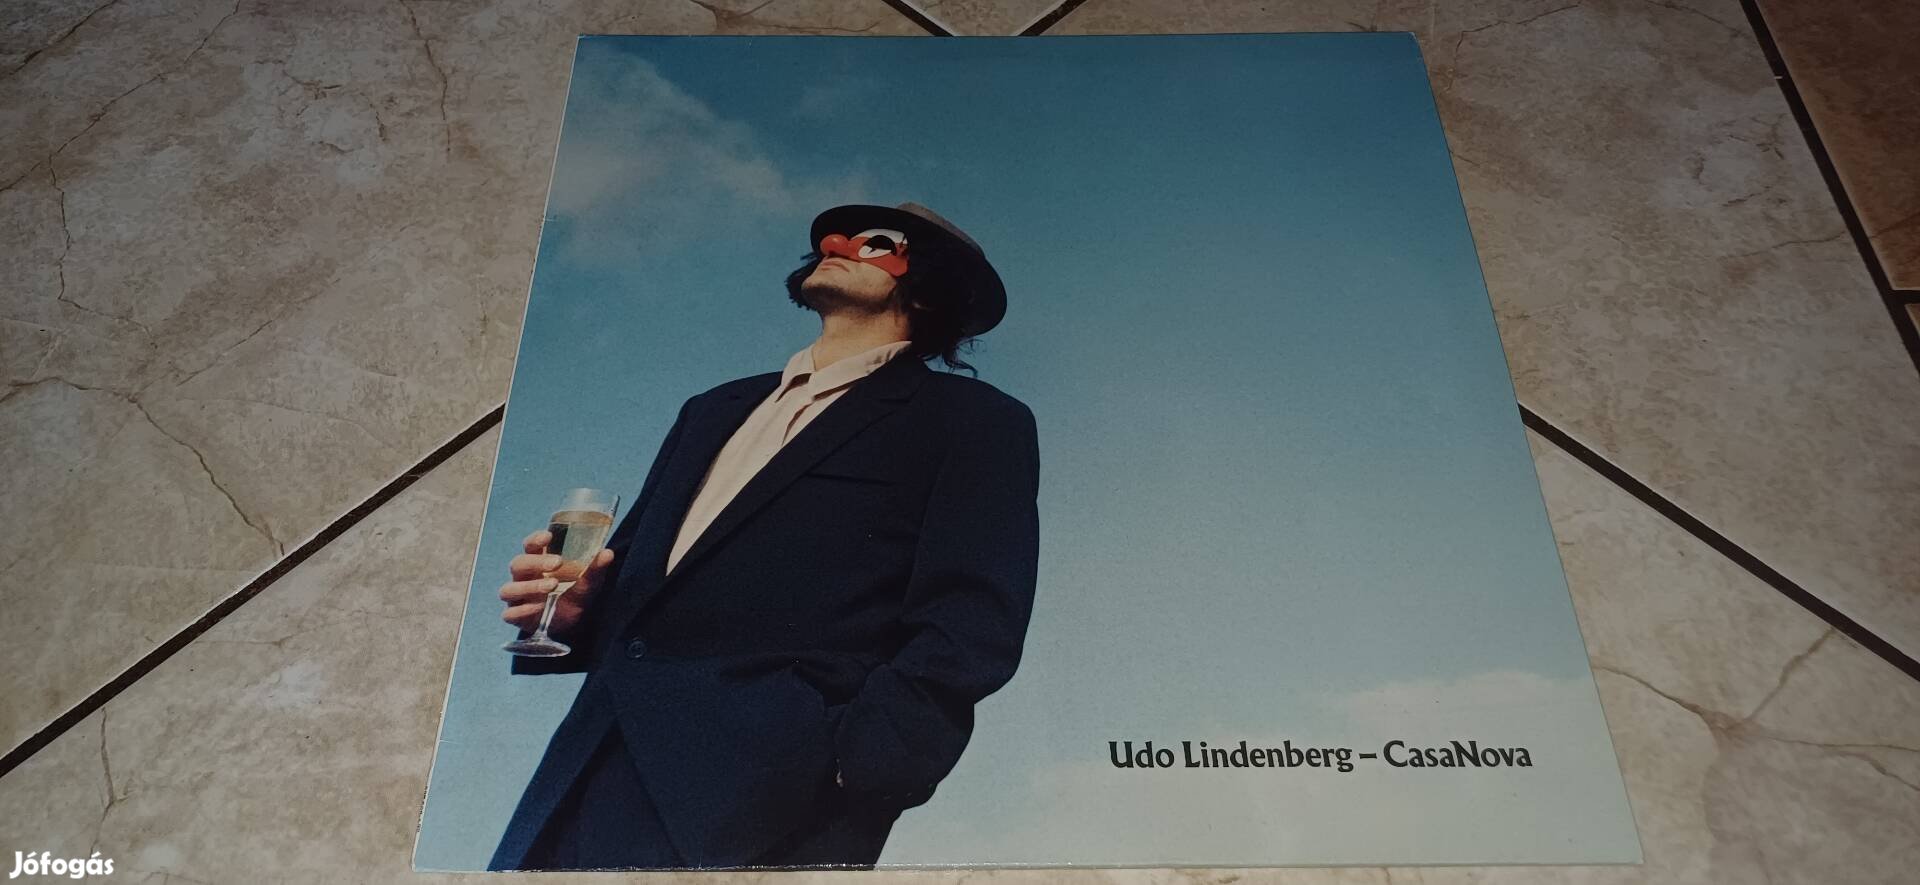 Udo Lindenberg bakelit lemez